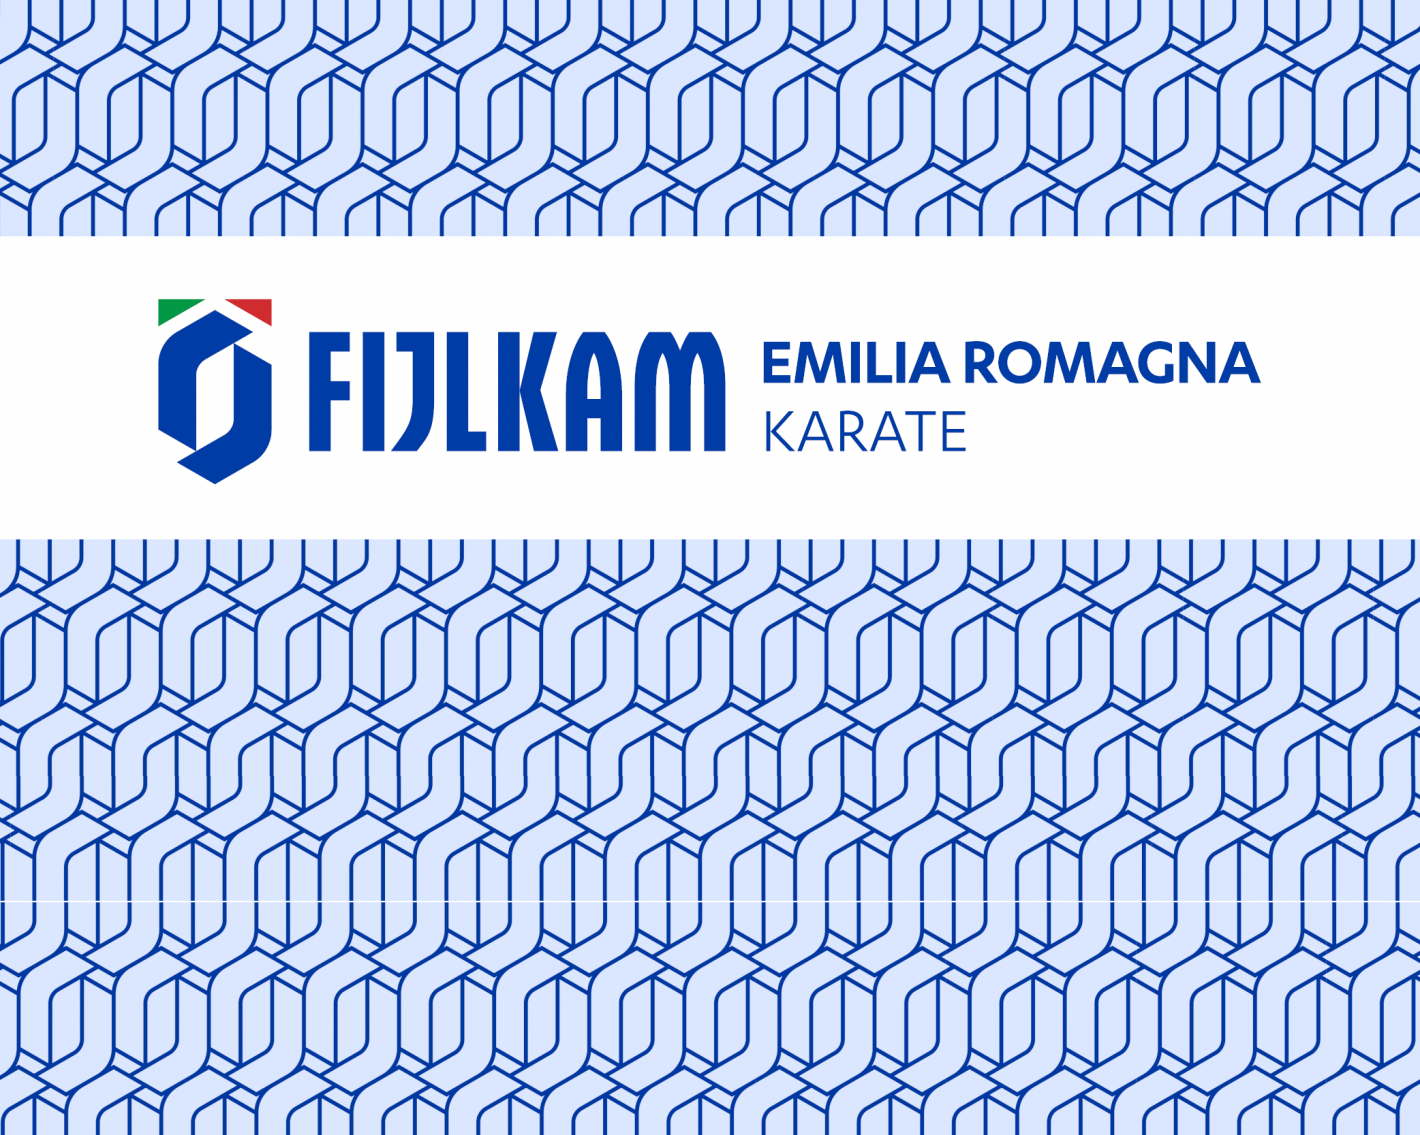 images/emilia_romagna/articoli/medium/Regione_Emilia_Romagna_K_FIJLKAM.png